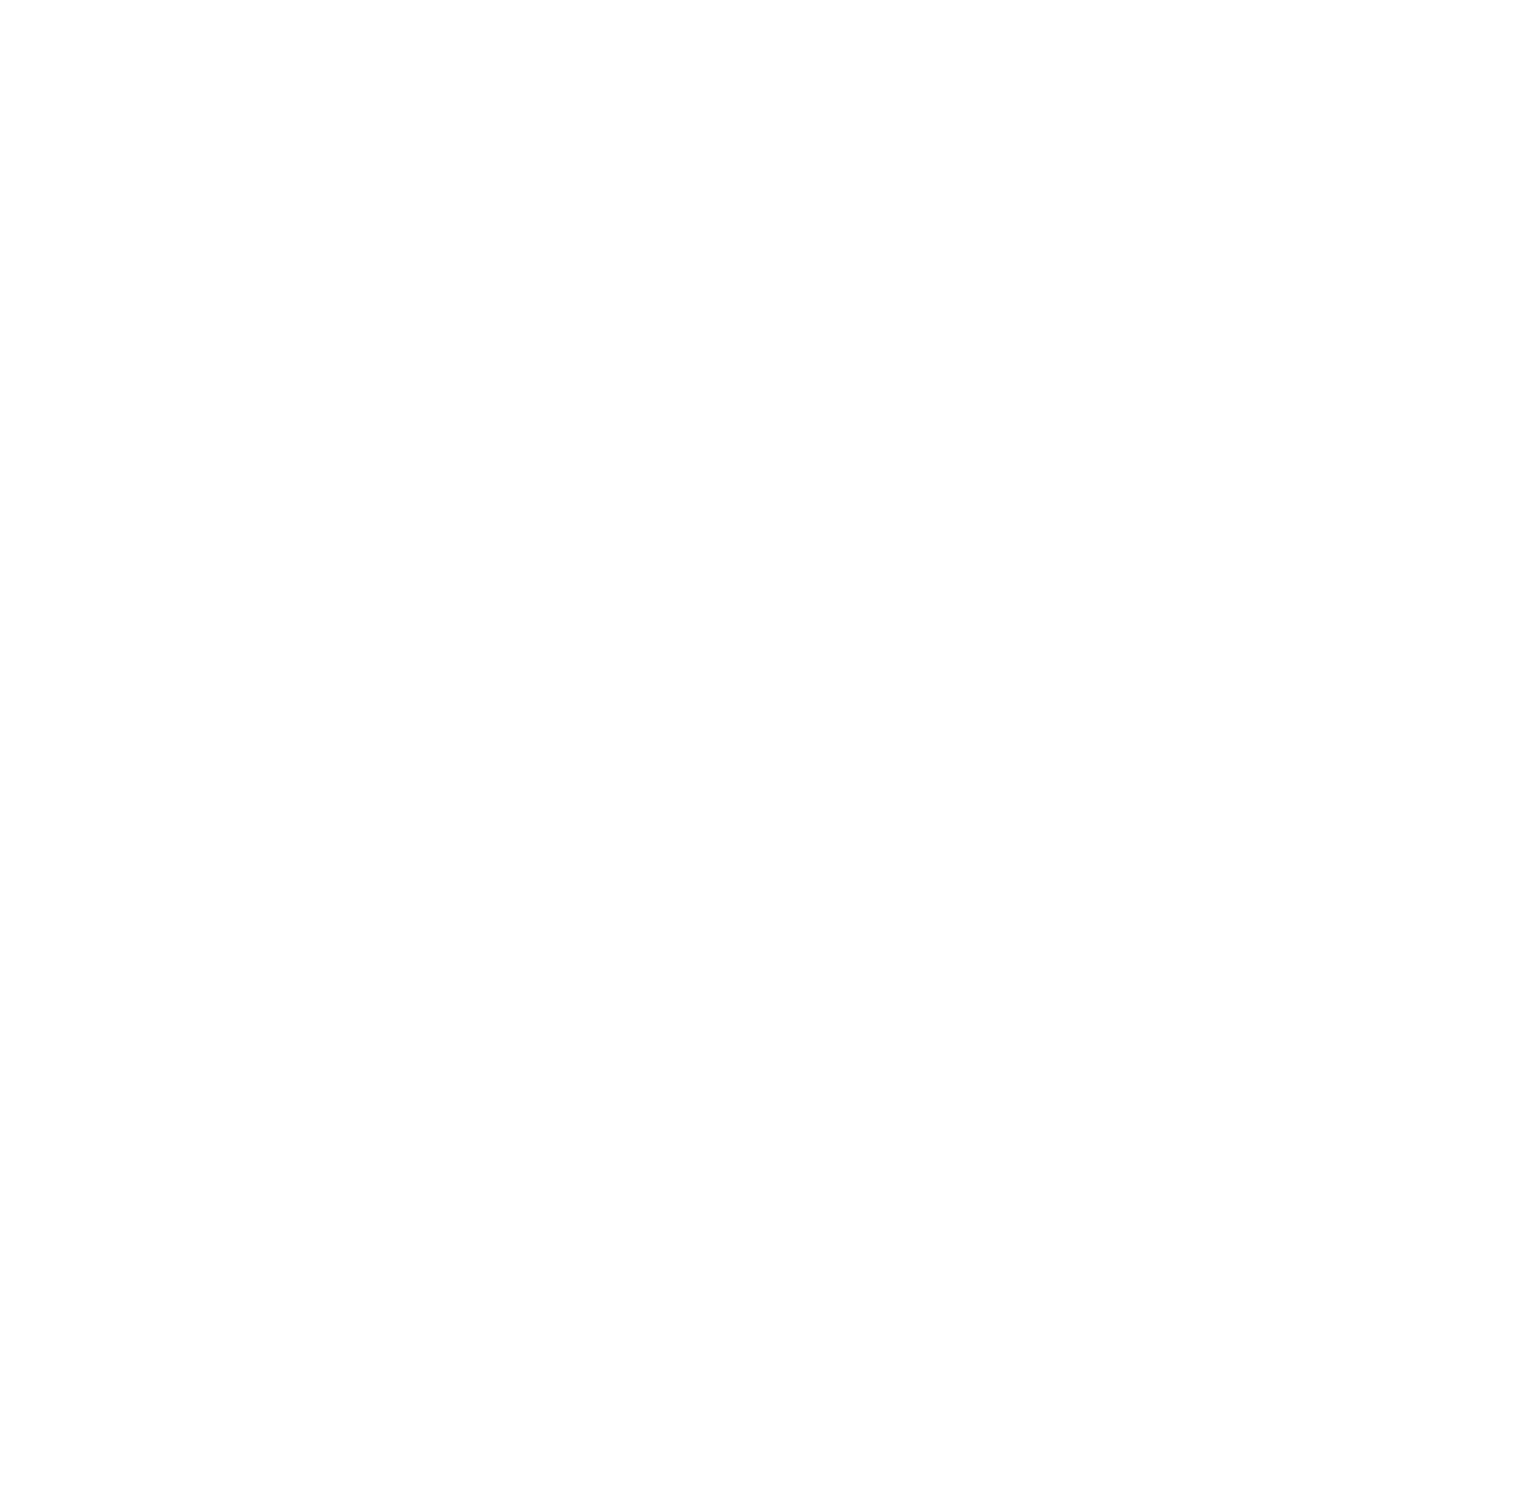 Skillsoft logo for dark backgrounds (transparent PNG)